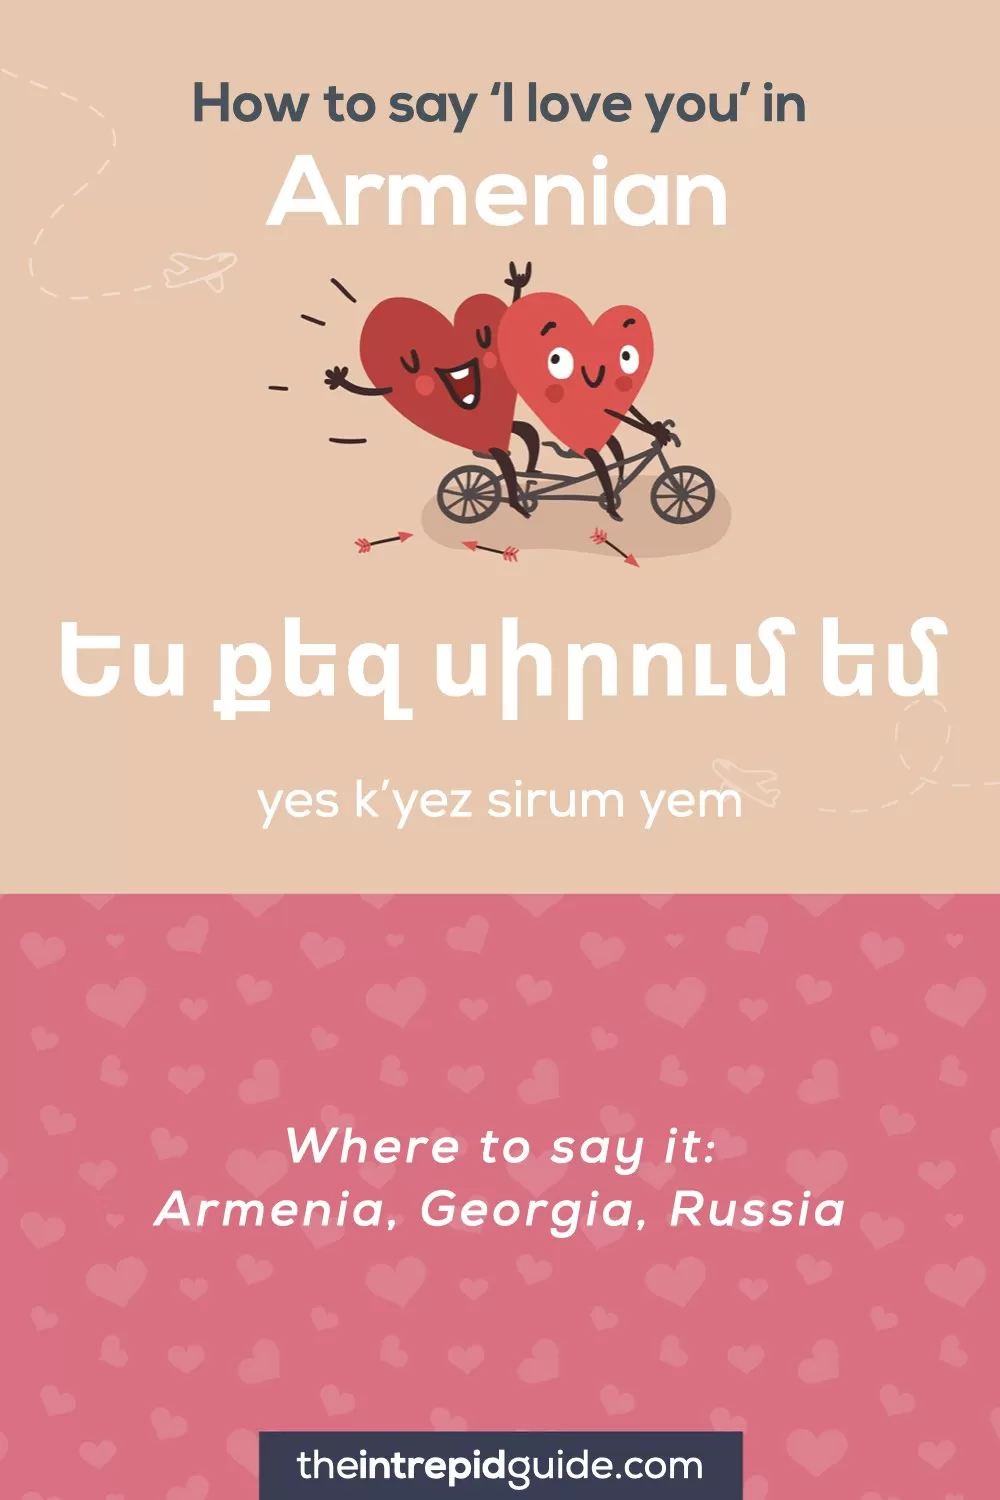 How to say I love you in different languages - Armenian - Ես քեզ սիրում եմ